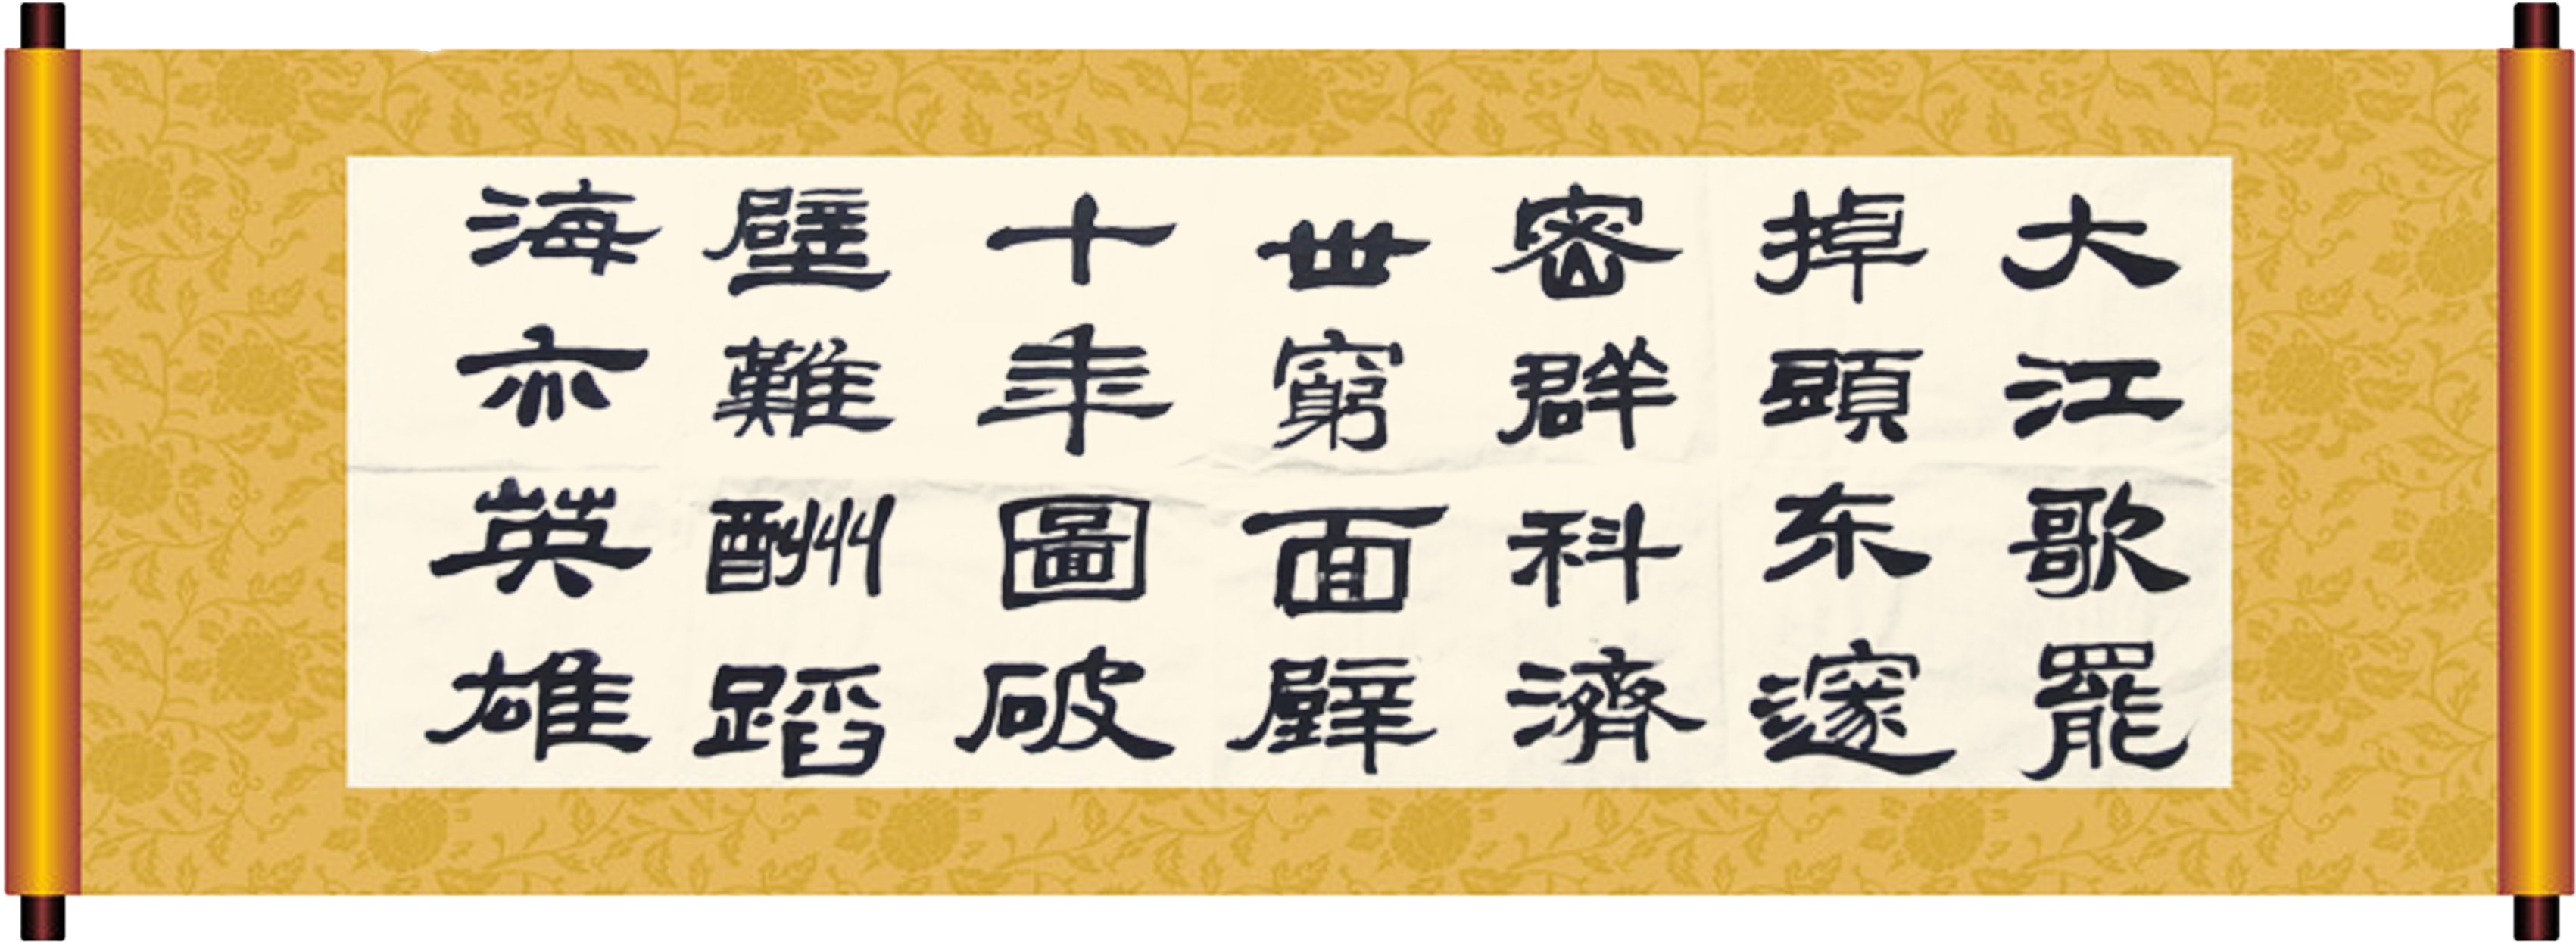 Das Bild zeigt ein Wandbild mit chinesischen Schriftzeichen.